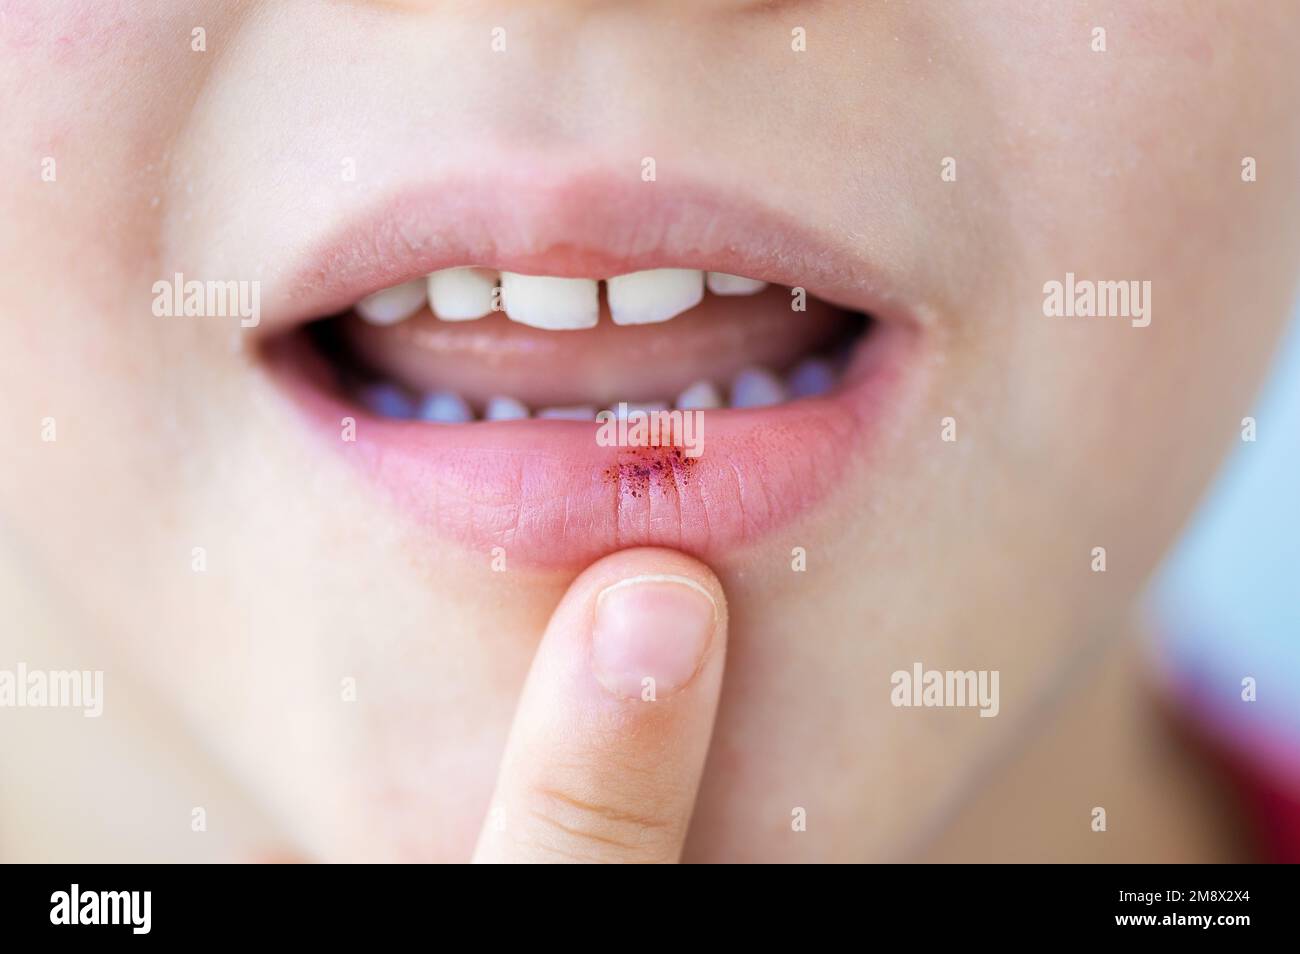 L'enfant a un ulcère aphteux ou un mal de chancre sur la bouche au niveau de la lèvre Banque D'Images